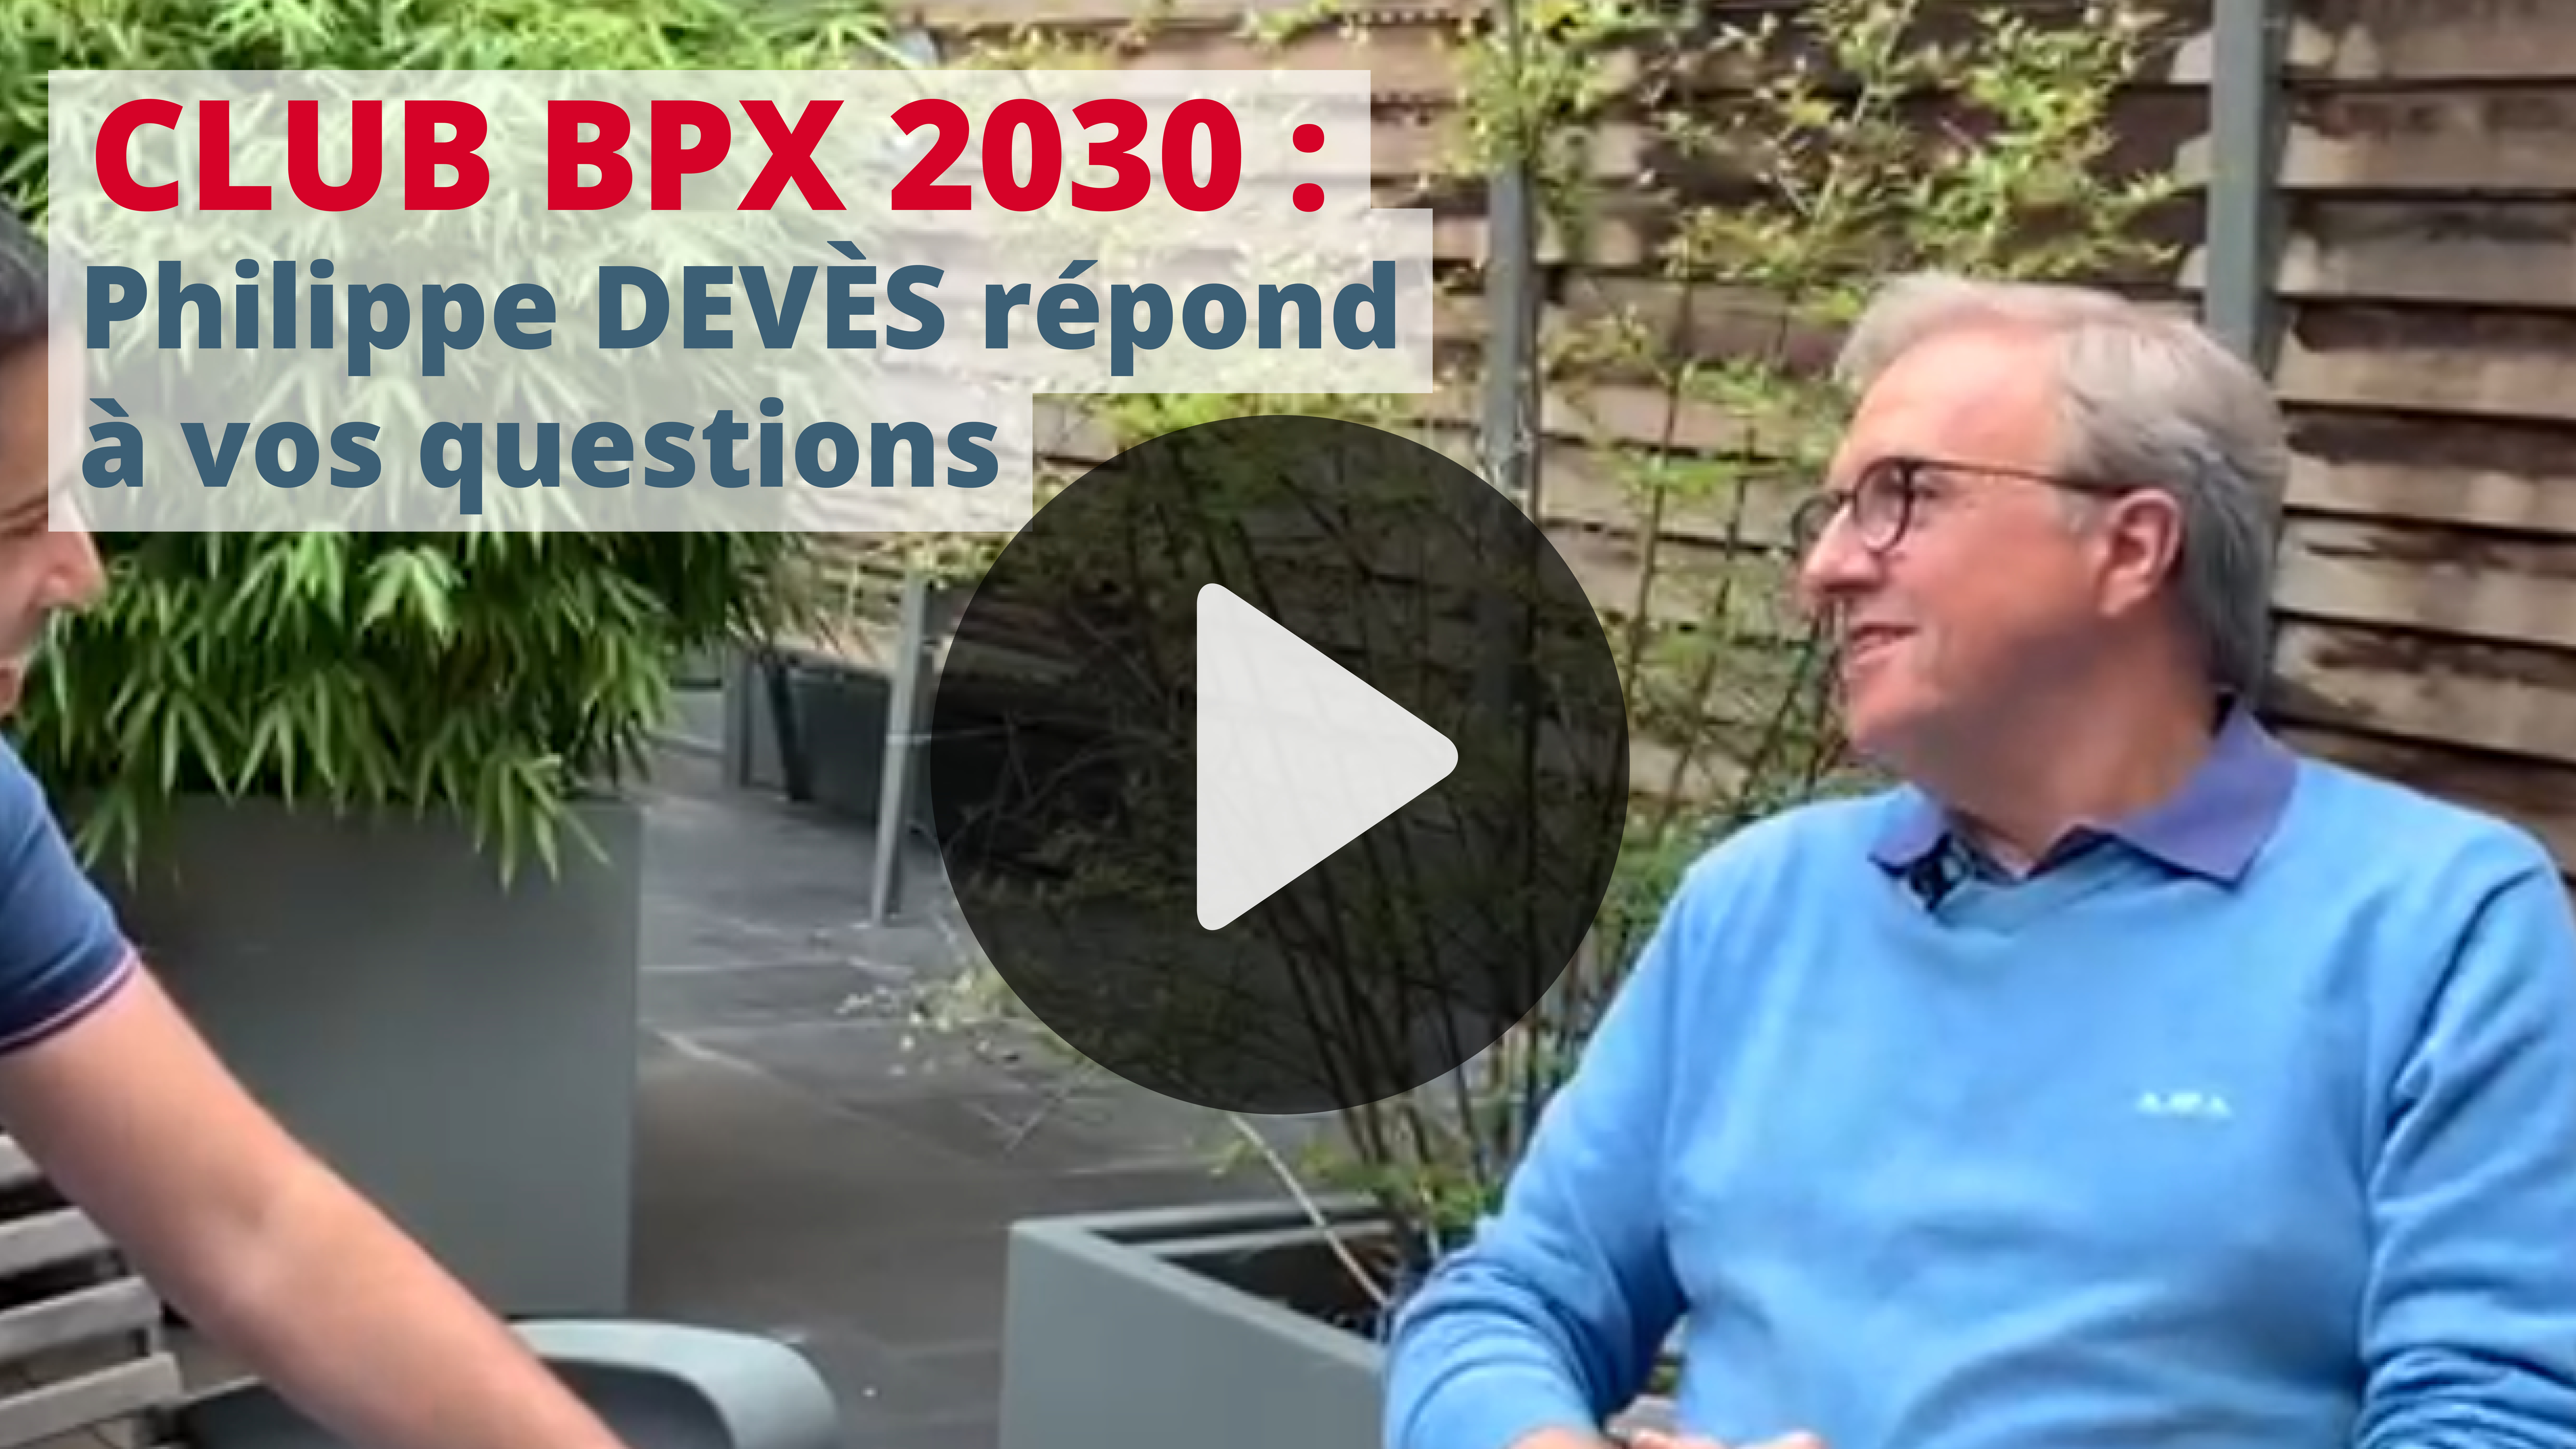 Philippe Devès présente les clubs BPX 2030